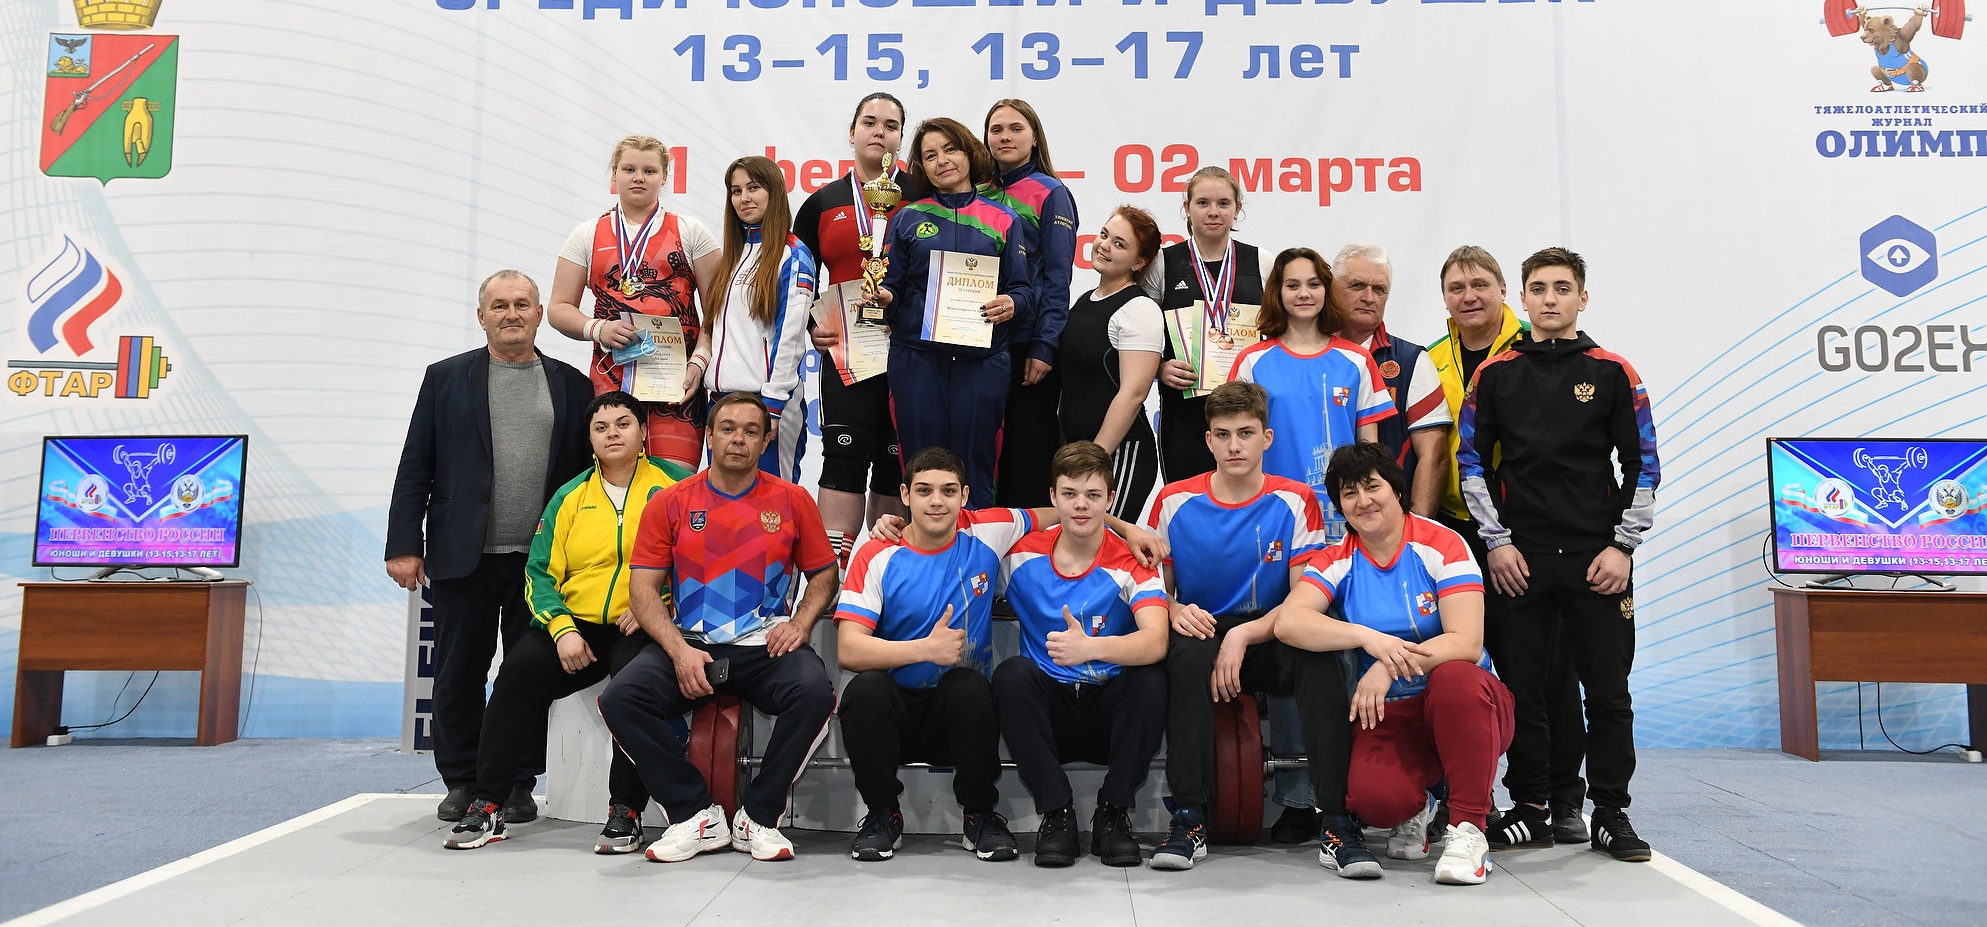 32 медали и три кубка у сборной Краснодарского края по тяжелой атлетике